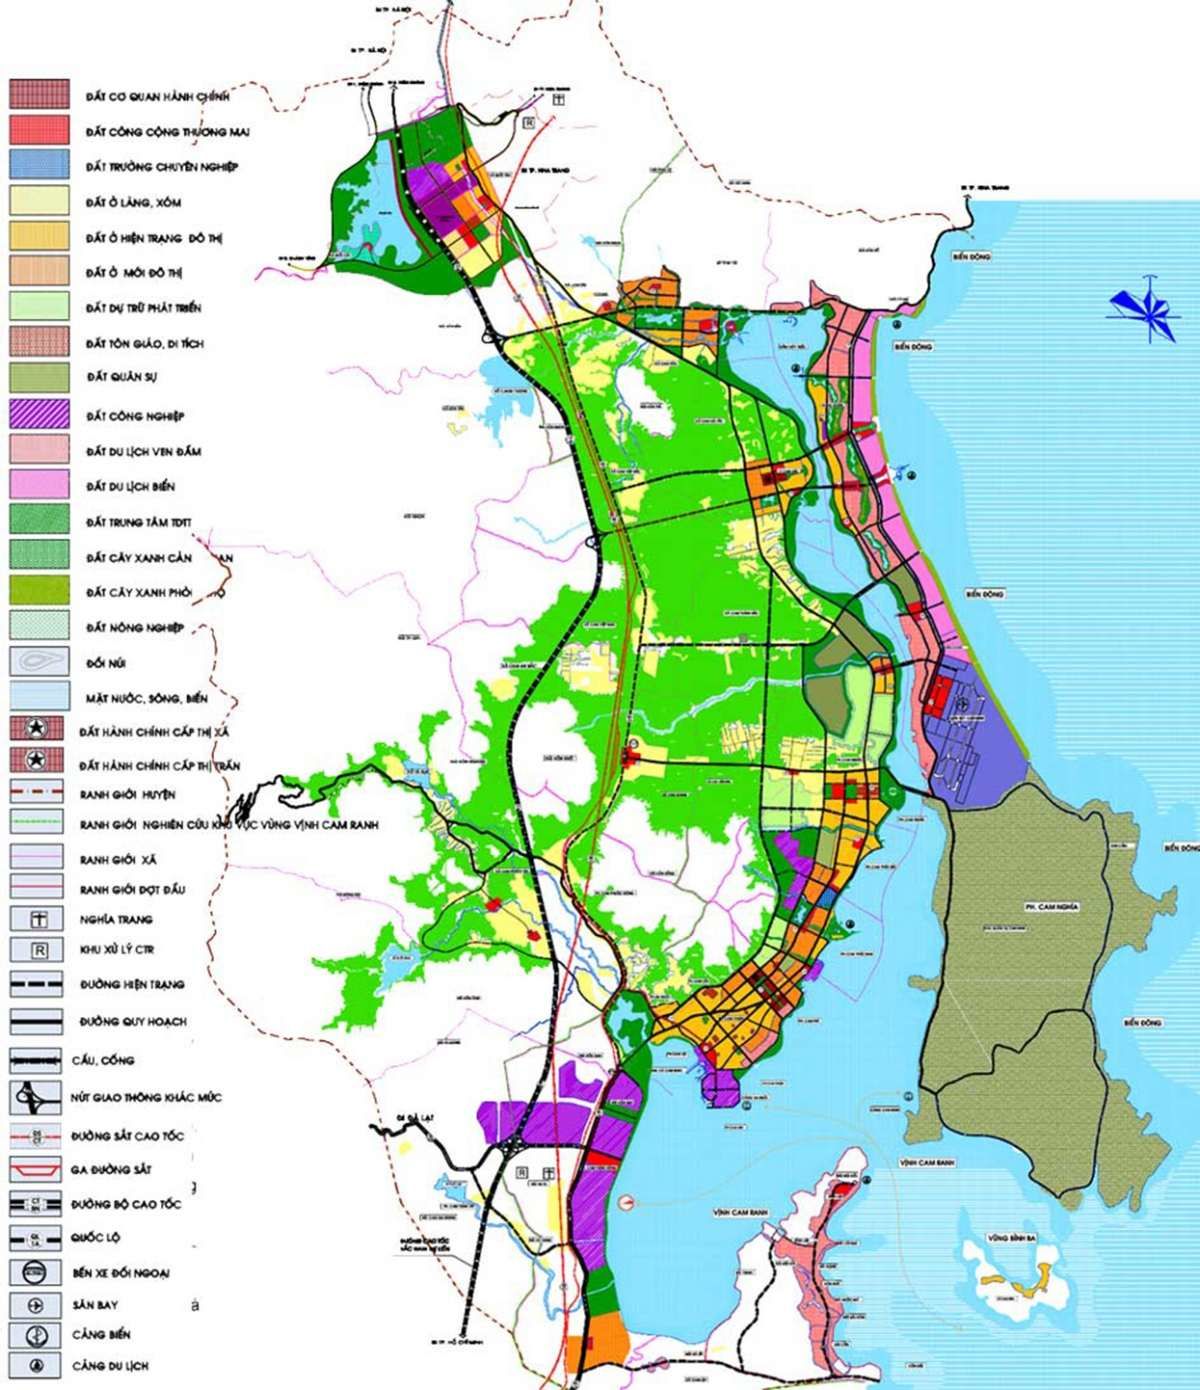 Quy hoạch thành phố Nha Trang đến năm 2030 là cơ hội cho thành phố phát triển toàn diện và bền vững hơn. Những kế hoạch đổi mới bao gồm phát triển du lịch, đánh giá lại công trình hạ tầng, cải thiện chất lượng cuộc sống và thu hút các nhà đầu tư, sẽ mang lại lợi ích lớn cho cộng đồng và kinh tế địa phương. Hãy xem hình ảnh để khám phá chi tiết về quy hoạch tại Nha Trang.